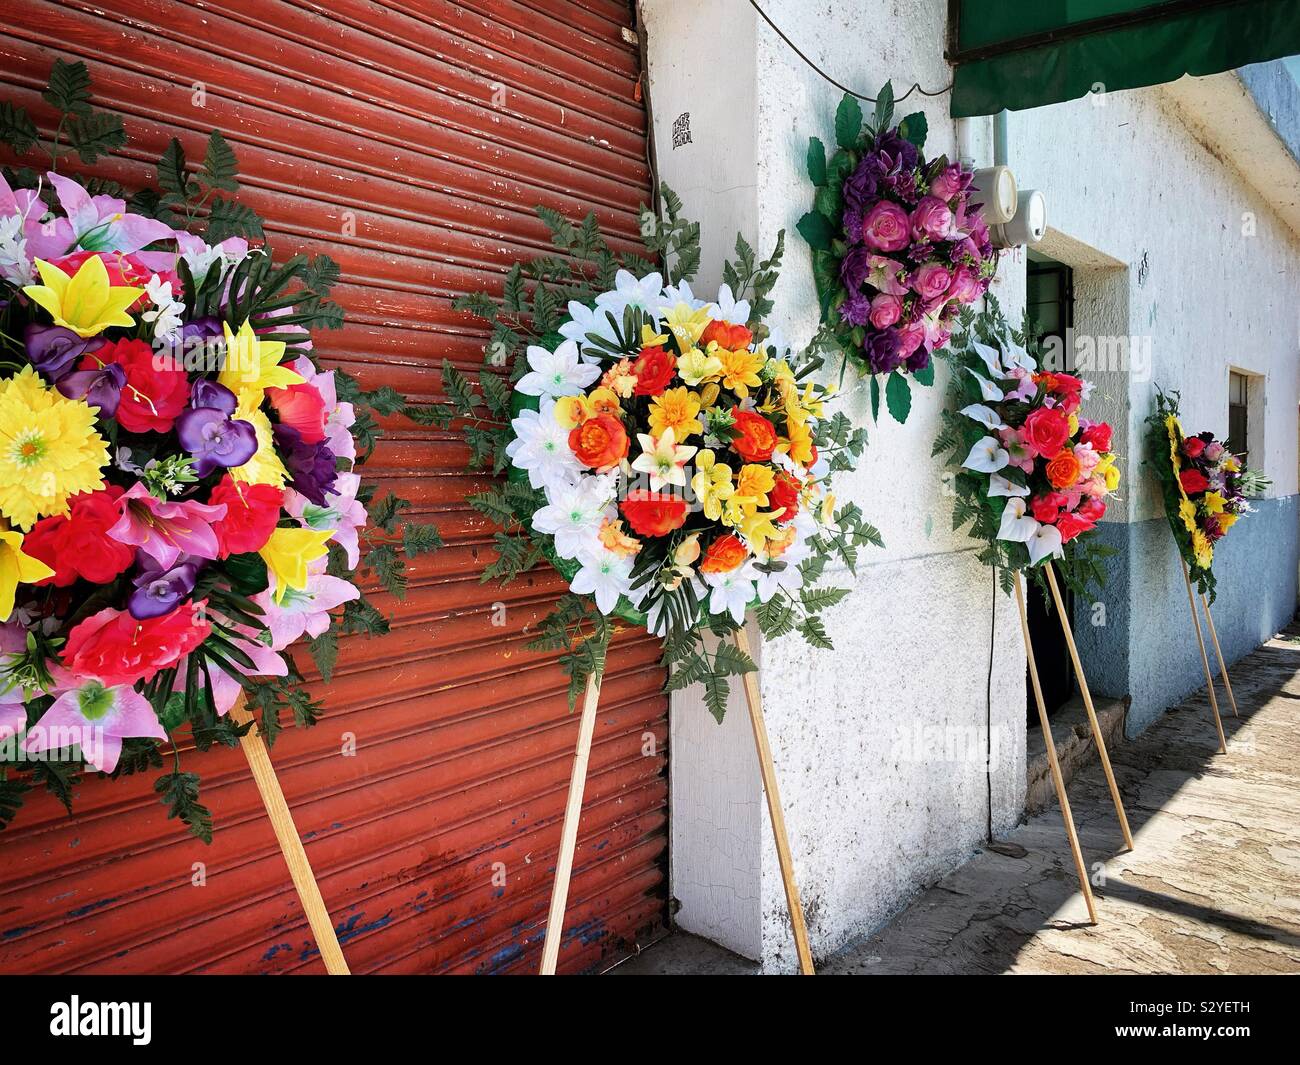 Coronas y arreglos florales están en exhibición para comprar en preparación para el Día de los Muertos. Foto de stock